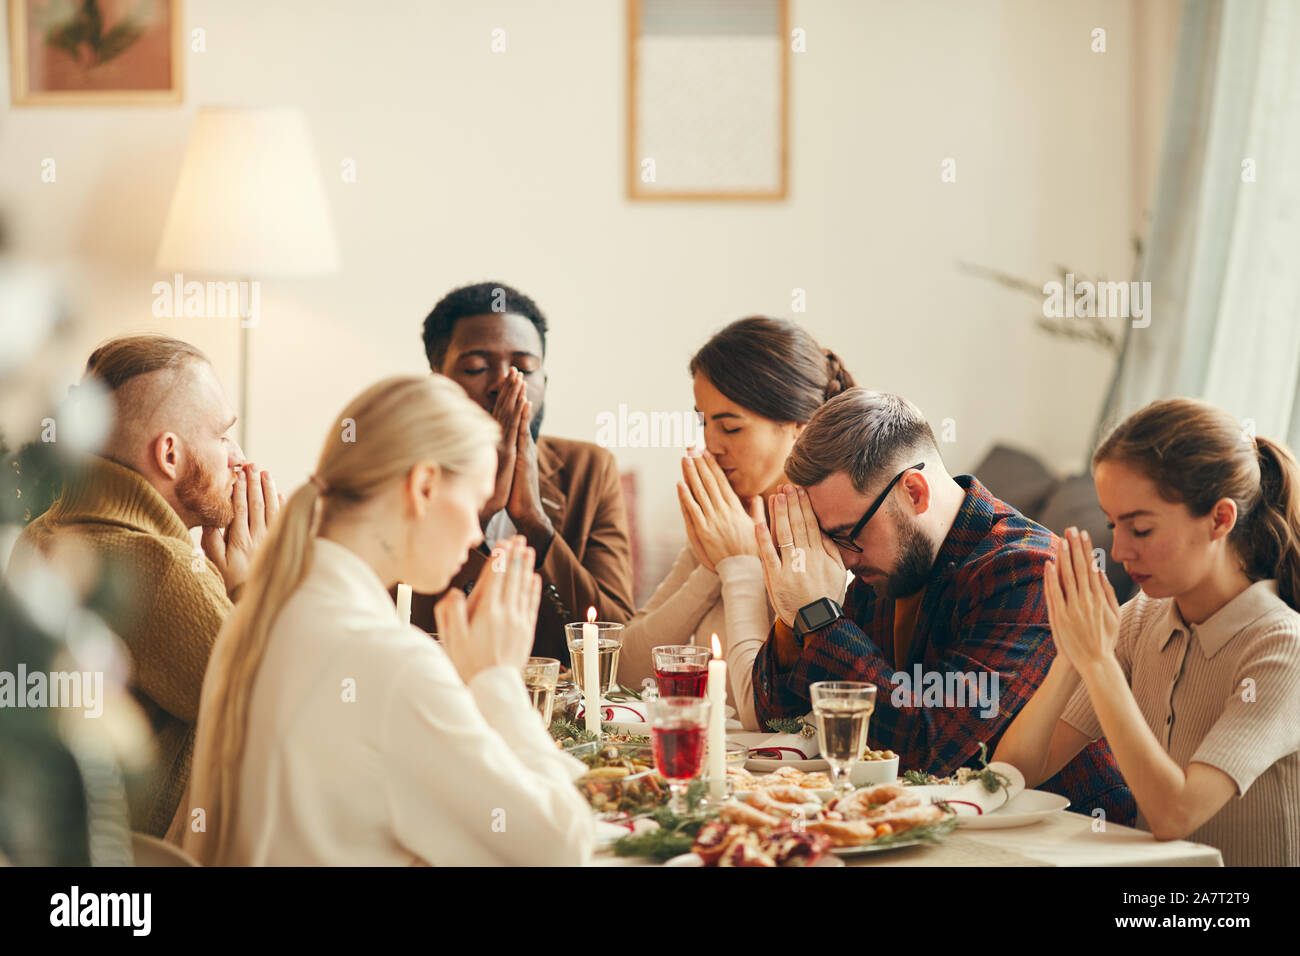 Groupe multi-ethnique de personnes disant grace au dîner banquet de Noël au cours de la table avec les amis et la famille Banque D'Images